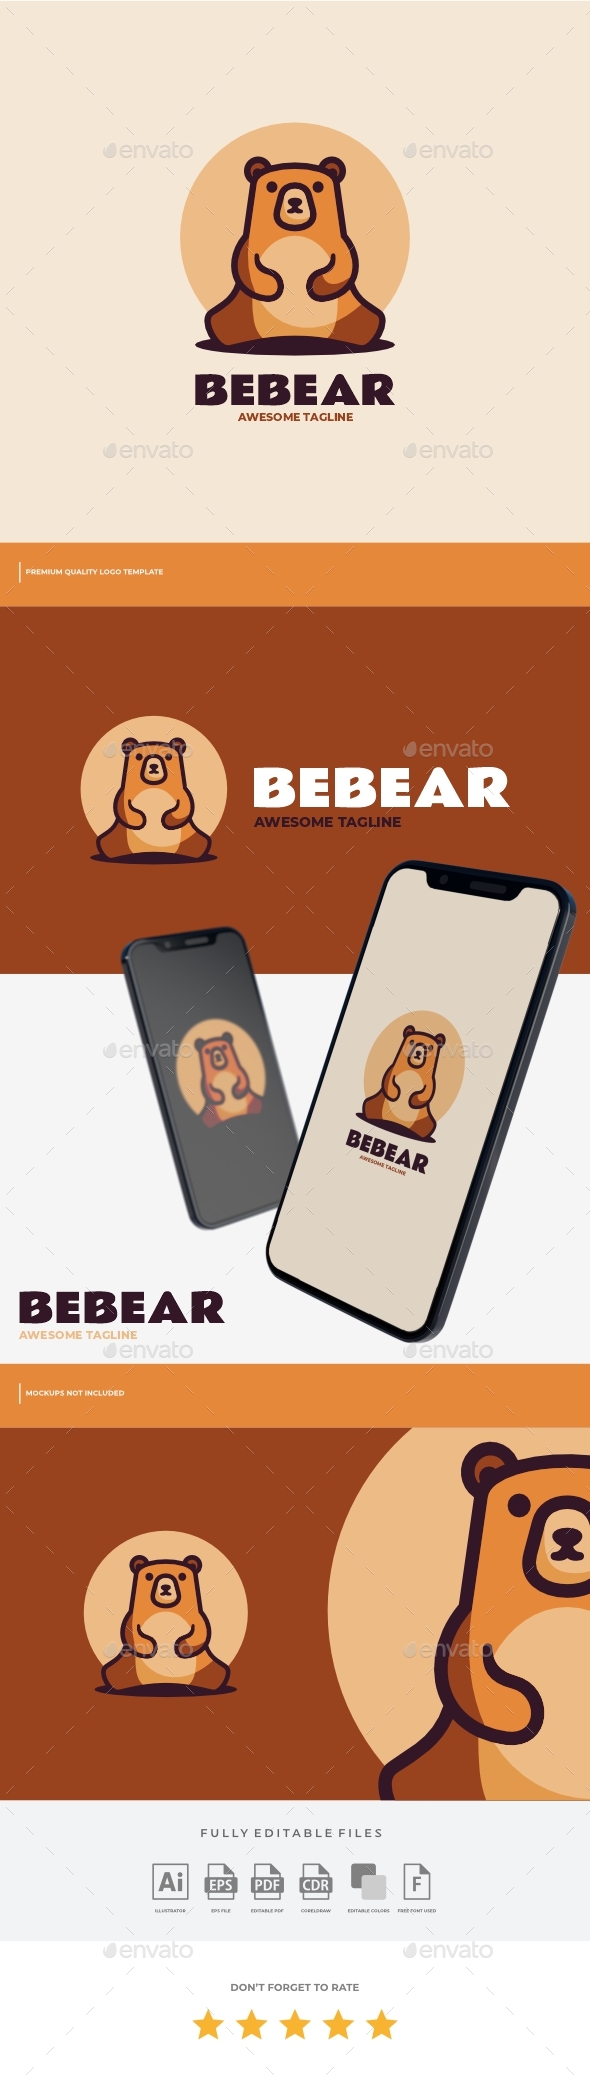 [DOWNLOAD]Bear Simple Mascot Logo Template